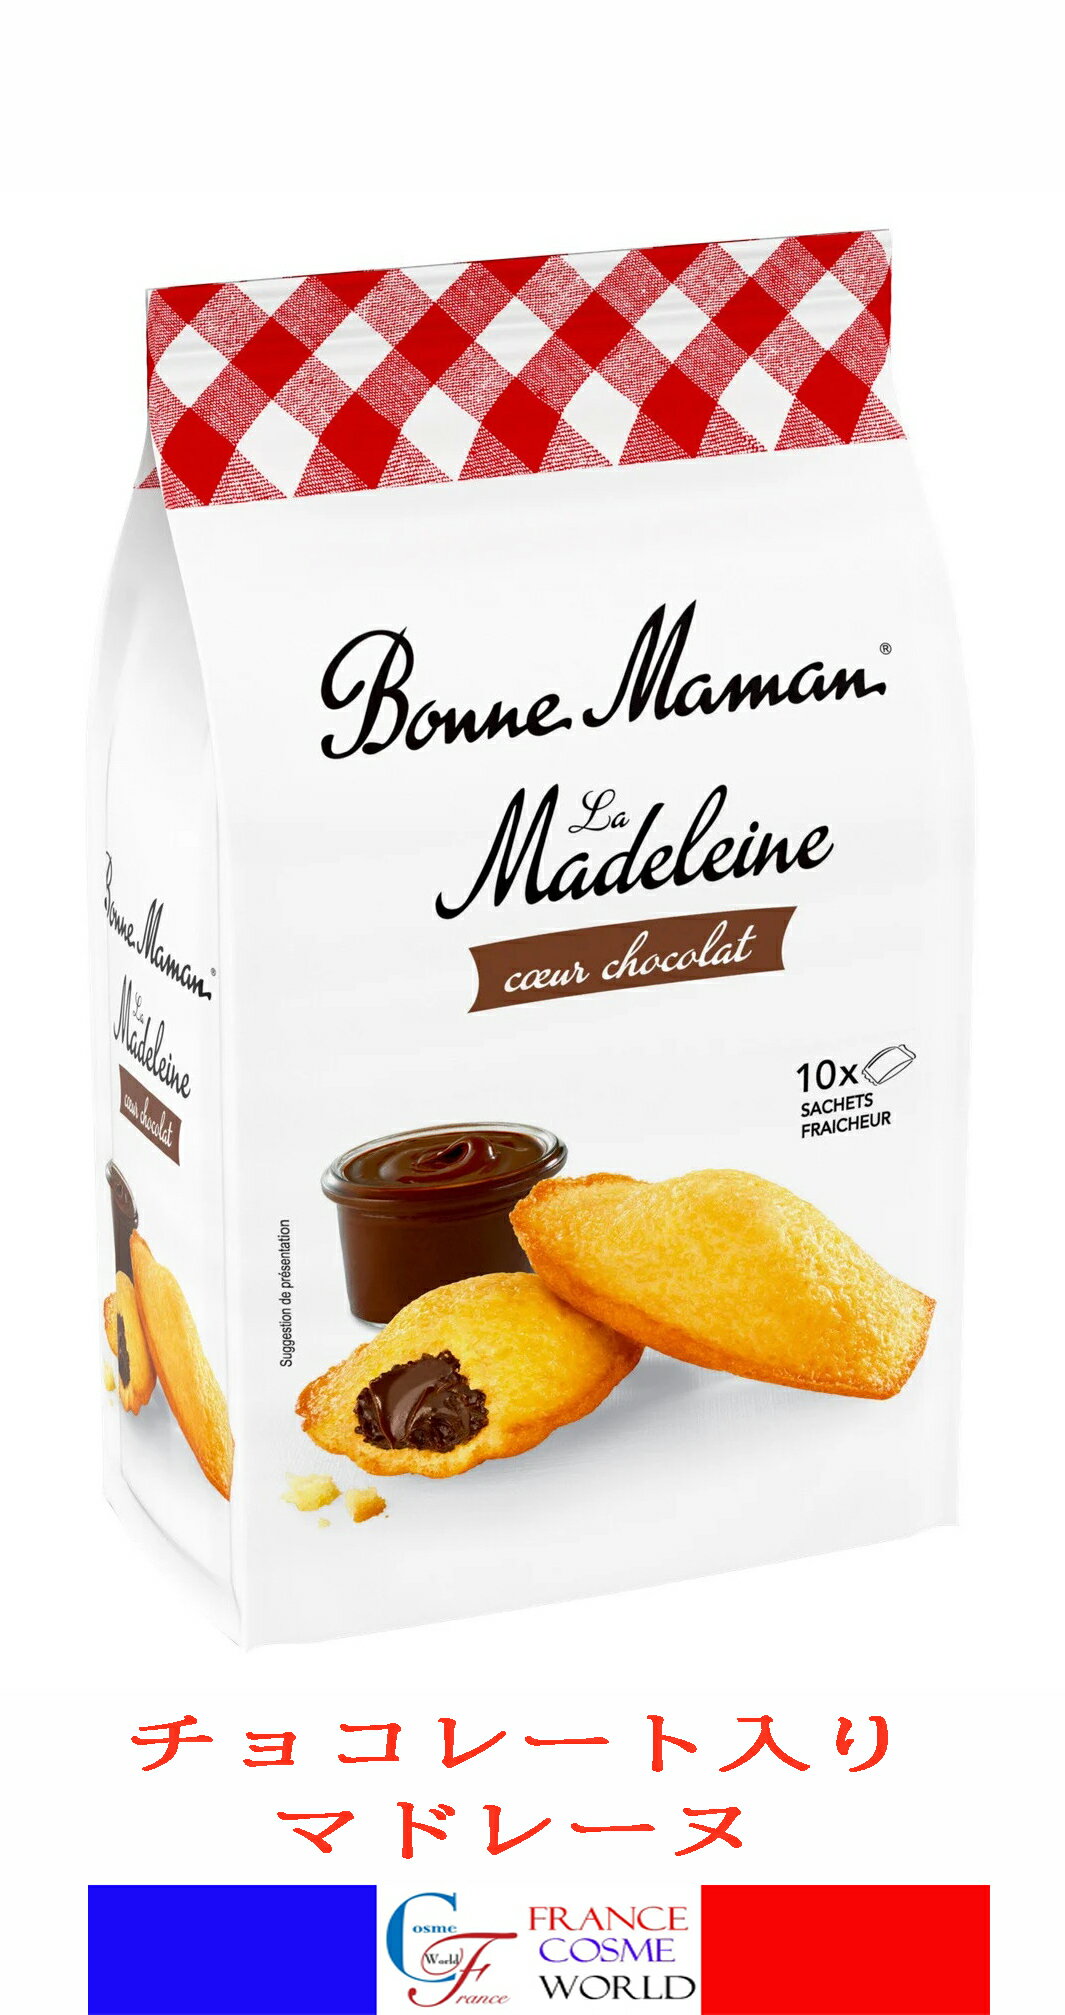 ボンヌママンチョコレート入り マドレーヌ 1袋10個入り 300g フランスより直送 送料無料BONNE MAMAN MADELENE CŒUR CHOCOLAT SACHET DE 10 300g